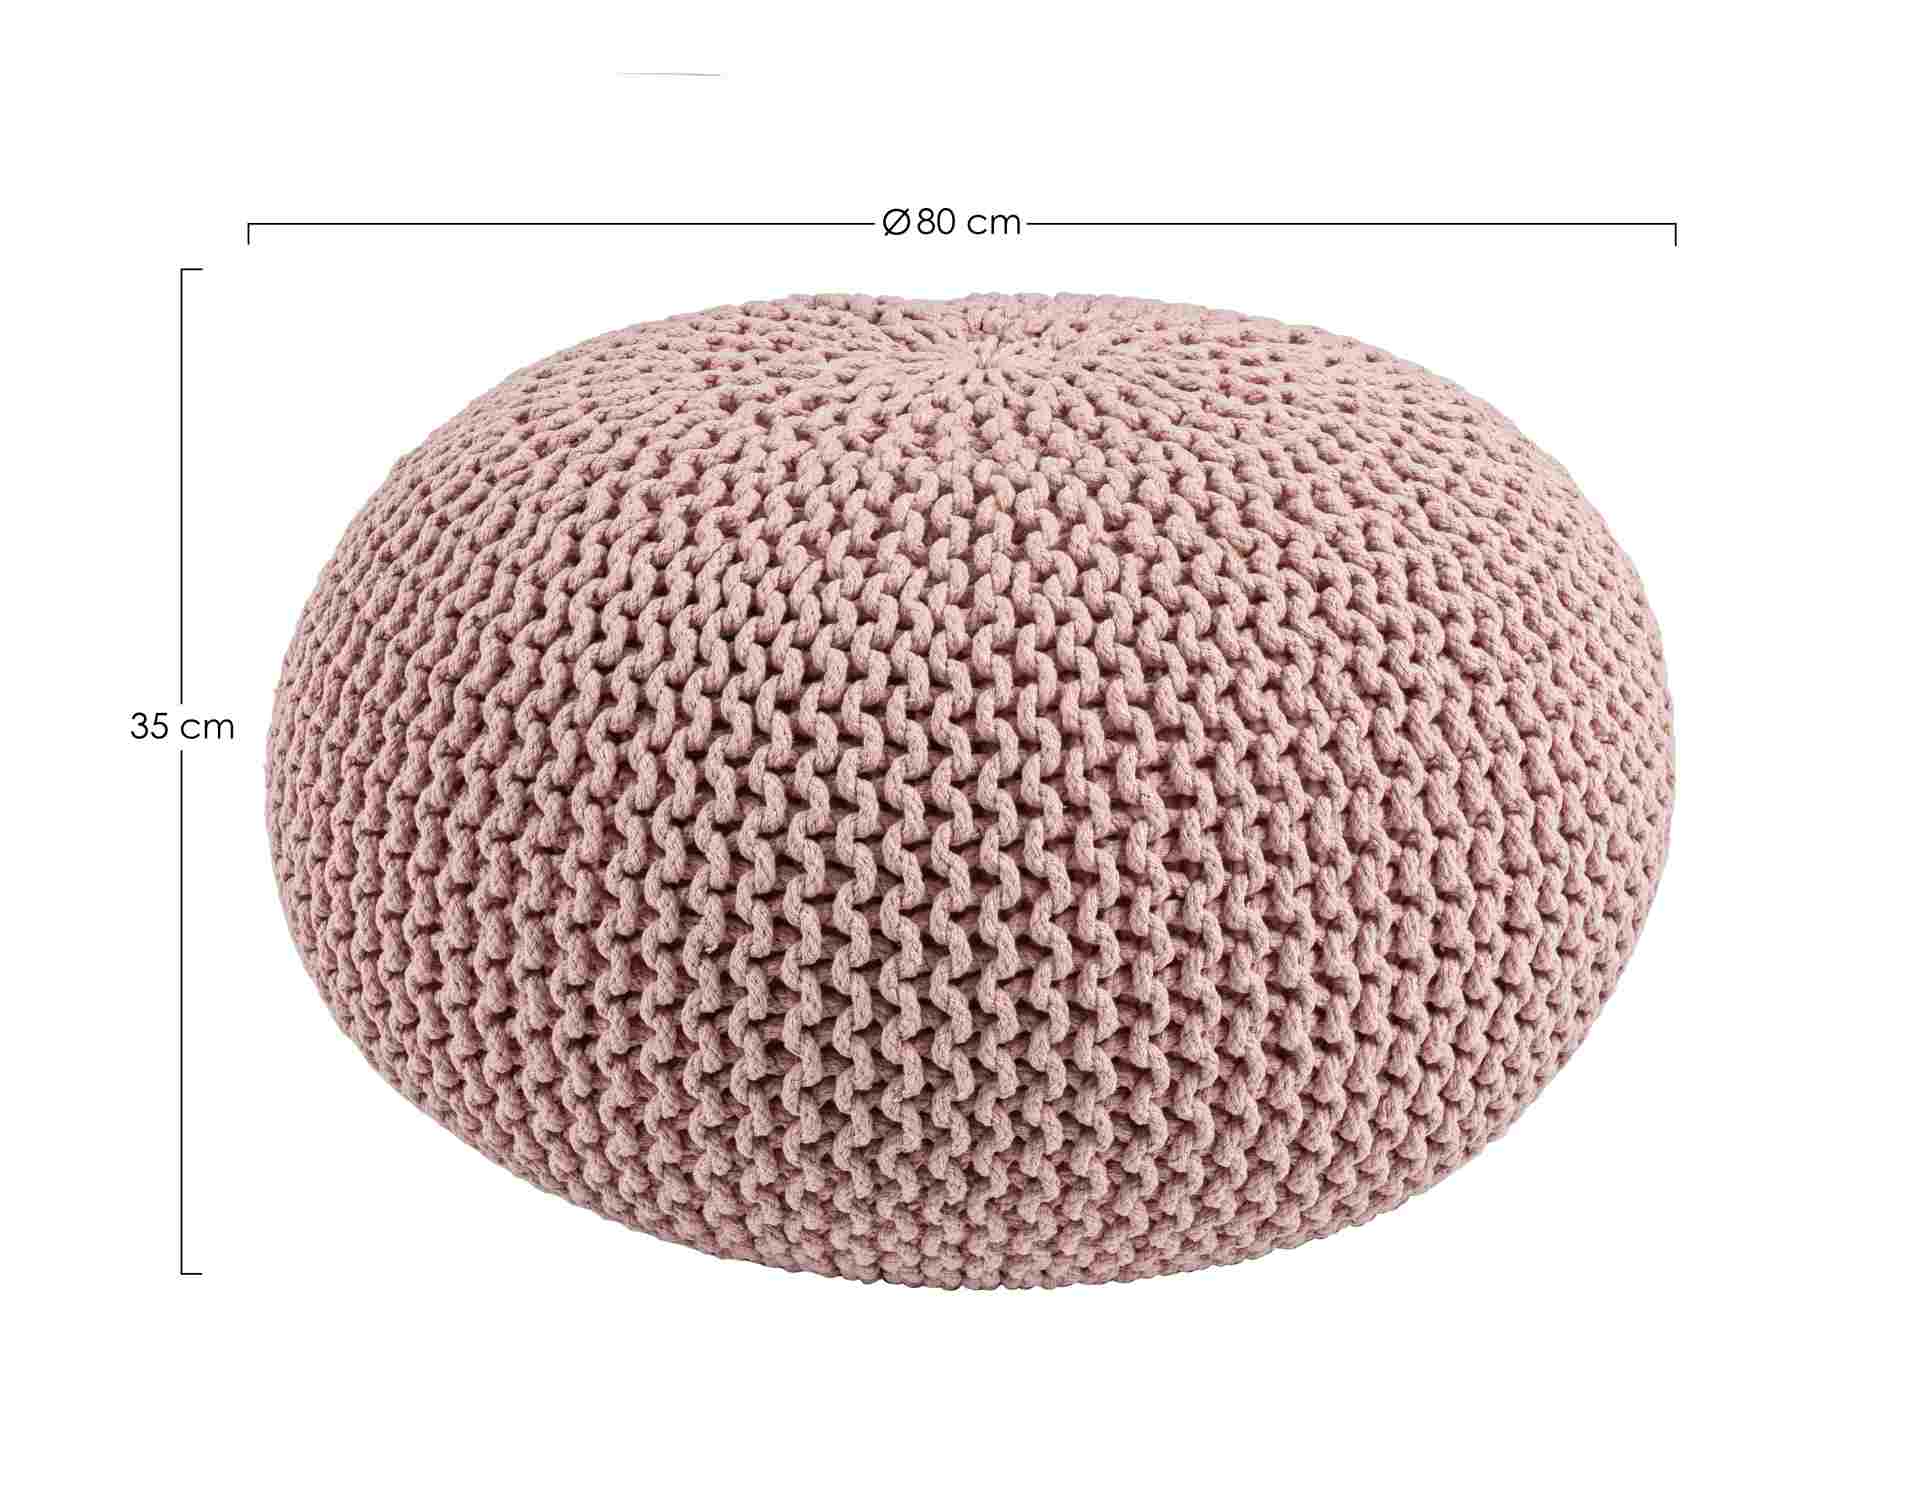 Der Pouf Geflecht überzeugt mit seinem modernen Design. Gefertigt wurde er aus Baumwolle, welche einen rosa Farbton besitzt. Die Füllung ist aus Polystyrol. Der Durchmesser beträgt 80 cm.